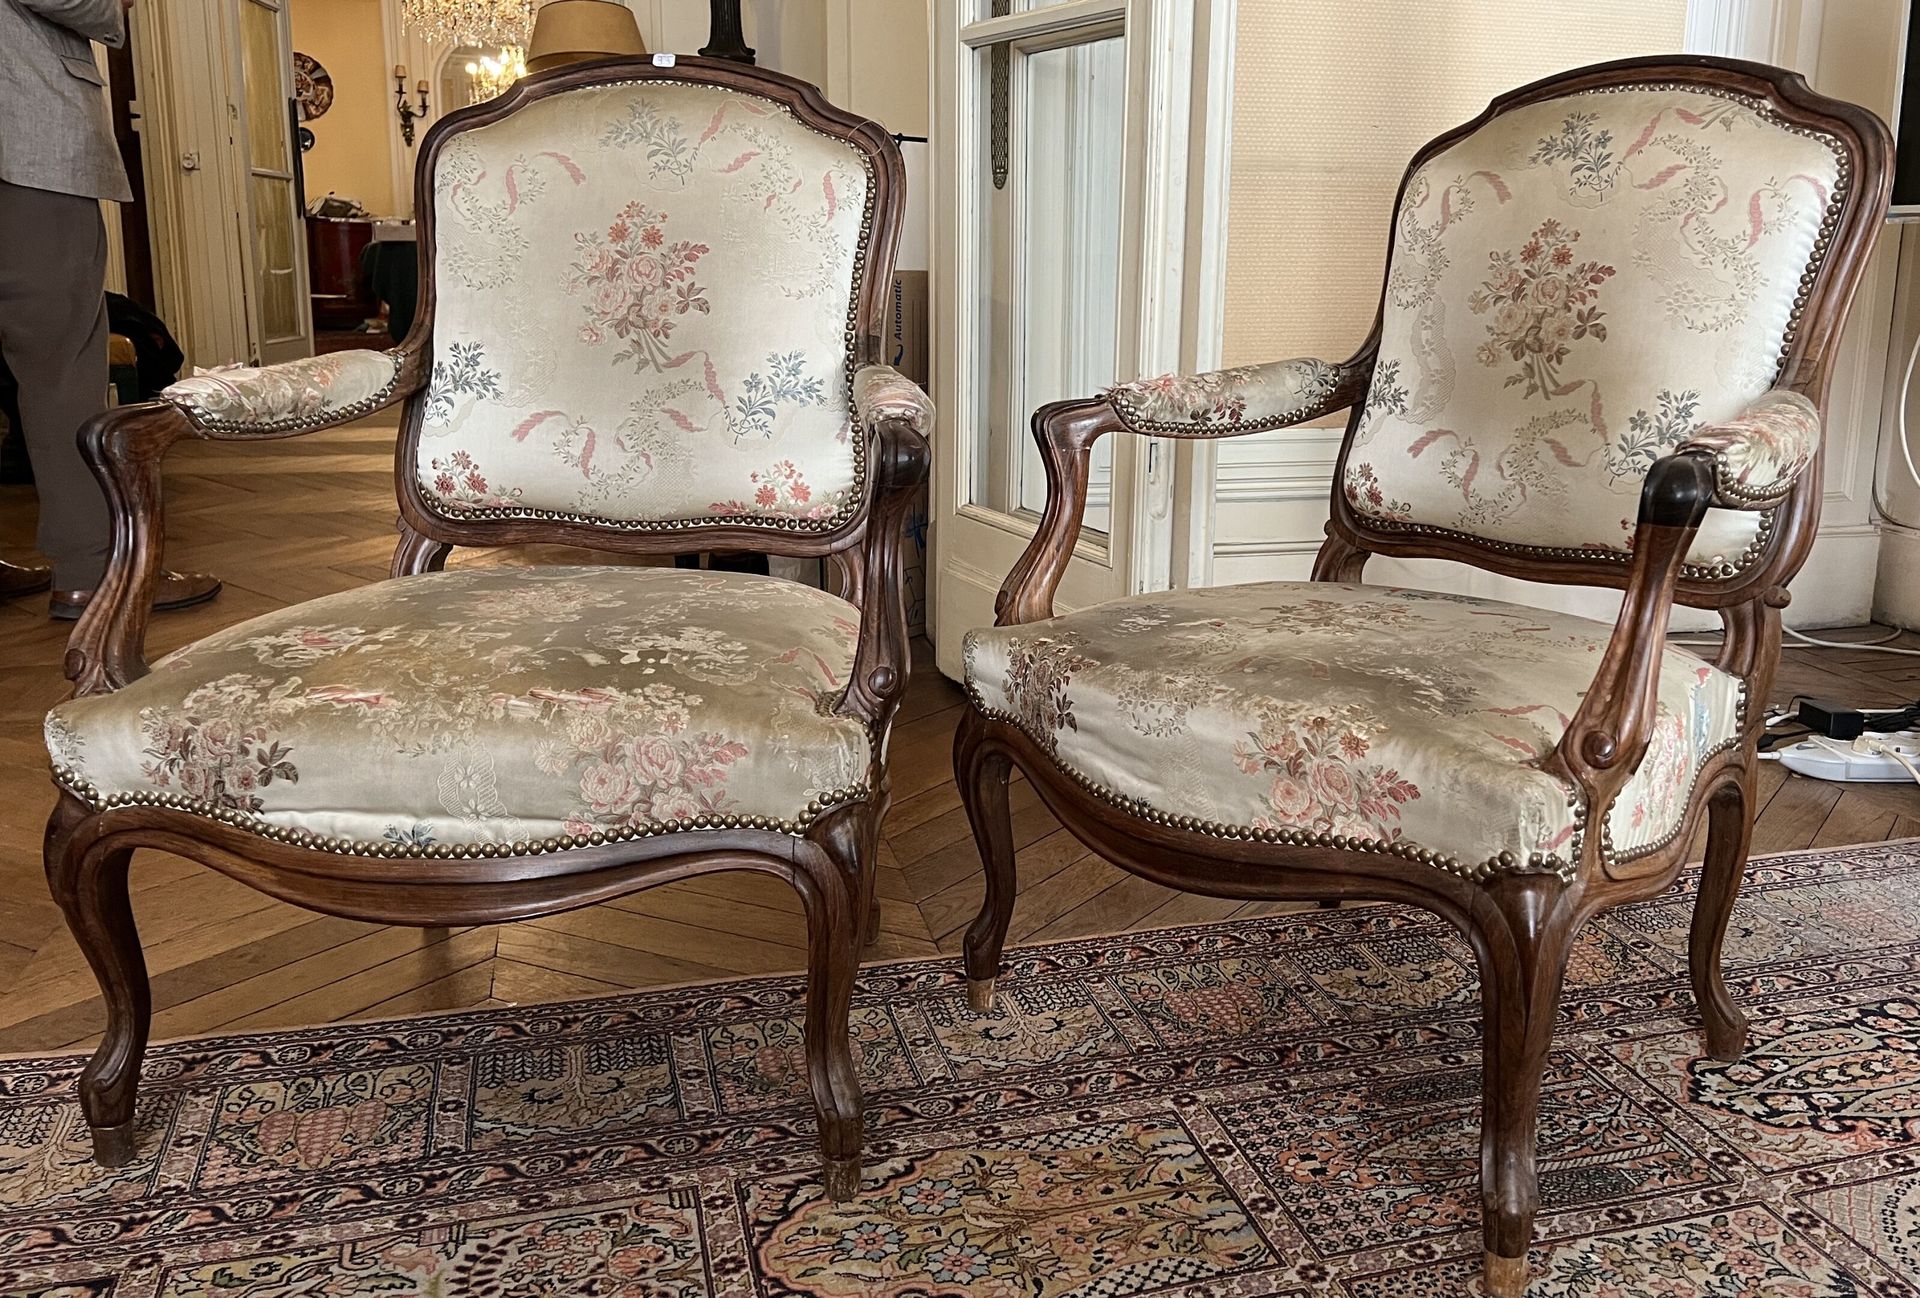 Null Un par de sillones de caoba de respaldo plano estilo Luis XV.

Altura 92 cm